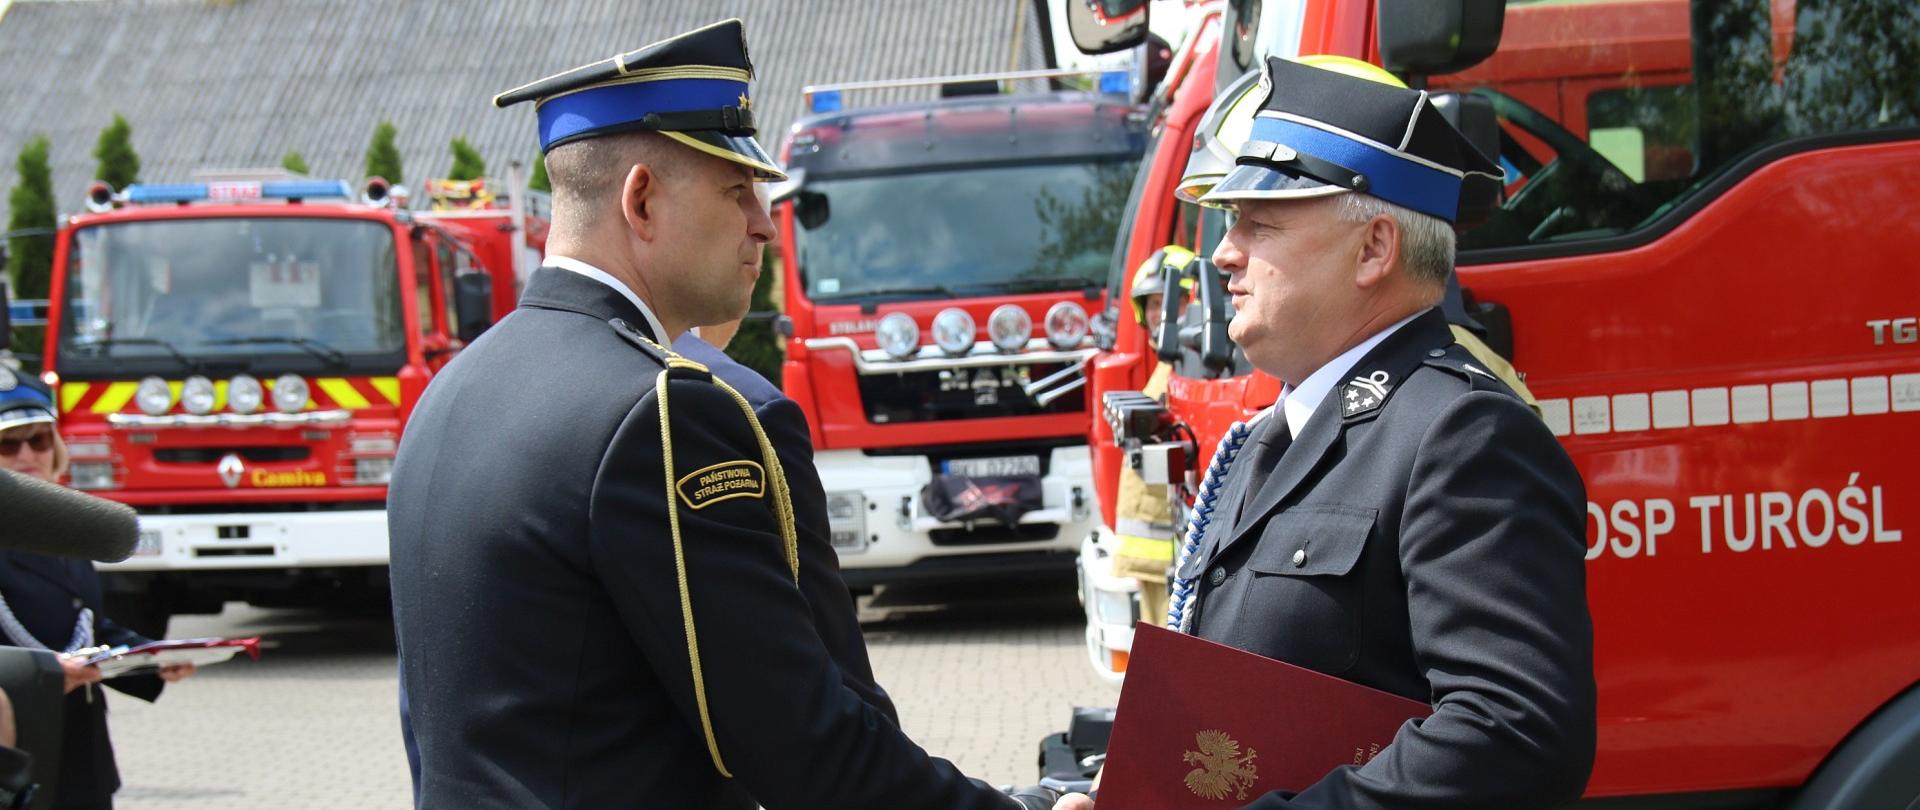 Na pierwszym planie Podlaski Komendant Wojewódzki i druh OSP, w tle pojazdy pożarnicze.